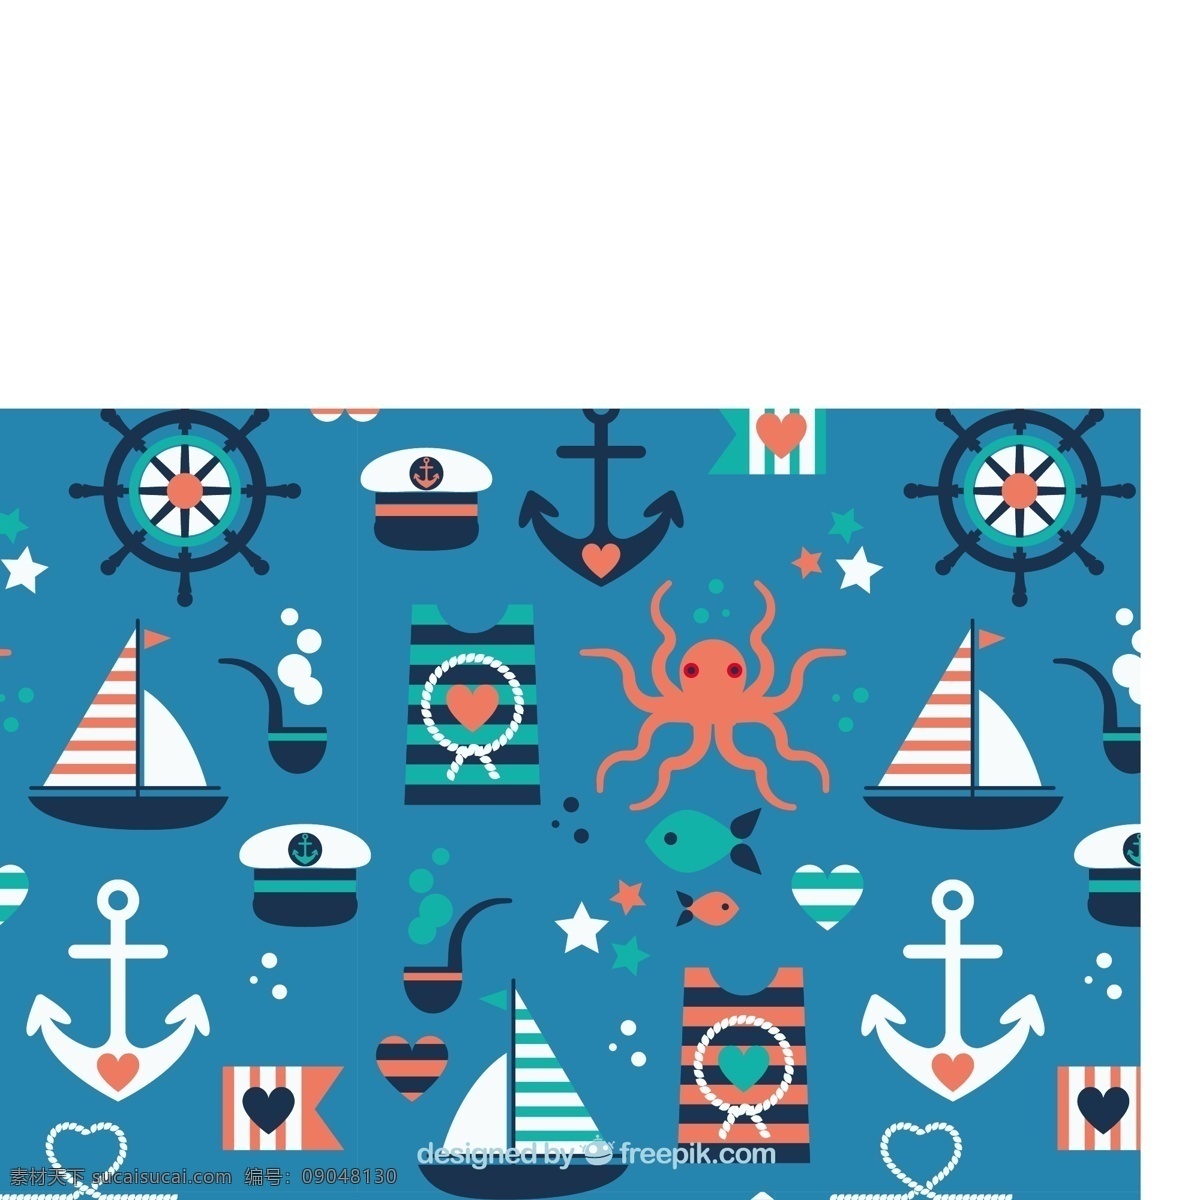 可爱 平 以及 元素 模式 背景 海 绳 船 帽子 锚 航海 t恤衫 t恤 海洋 平面设计 无缝模式 章鱼 水手 青色 天蓝色